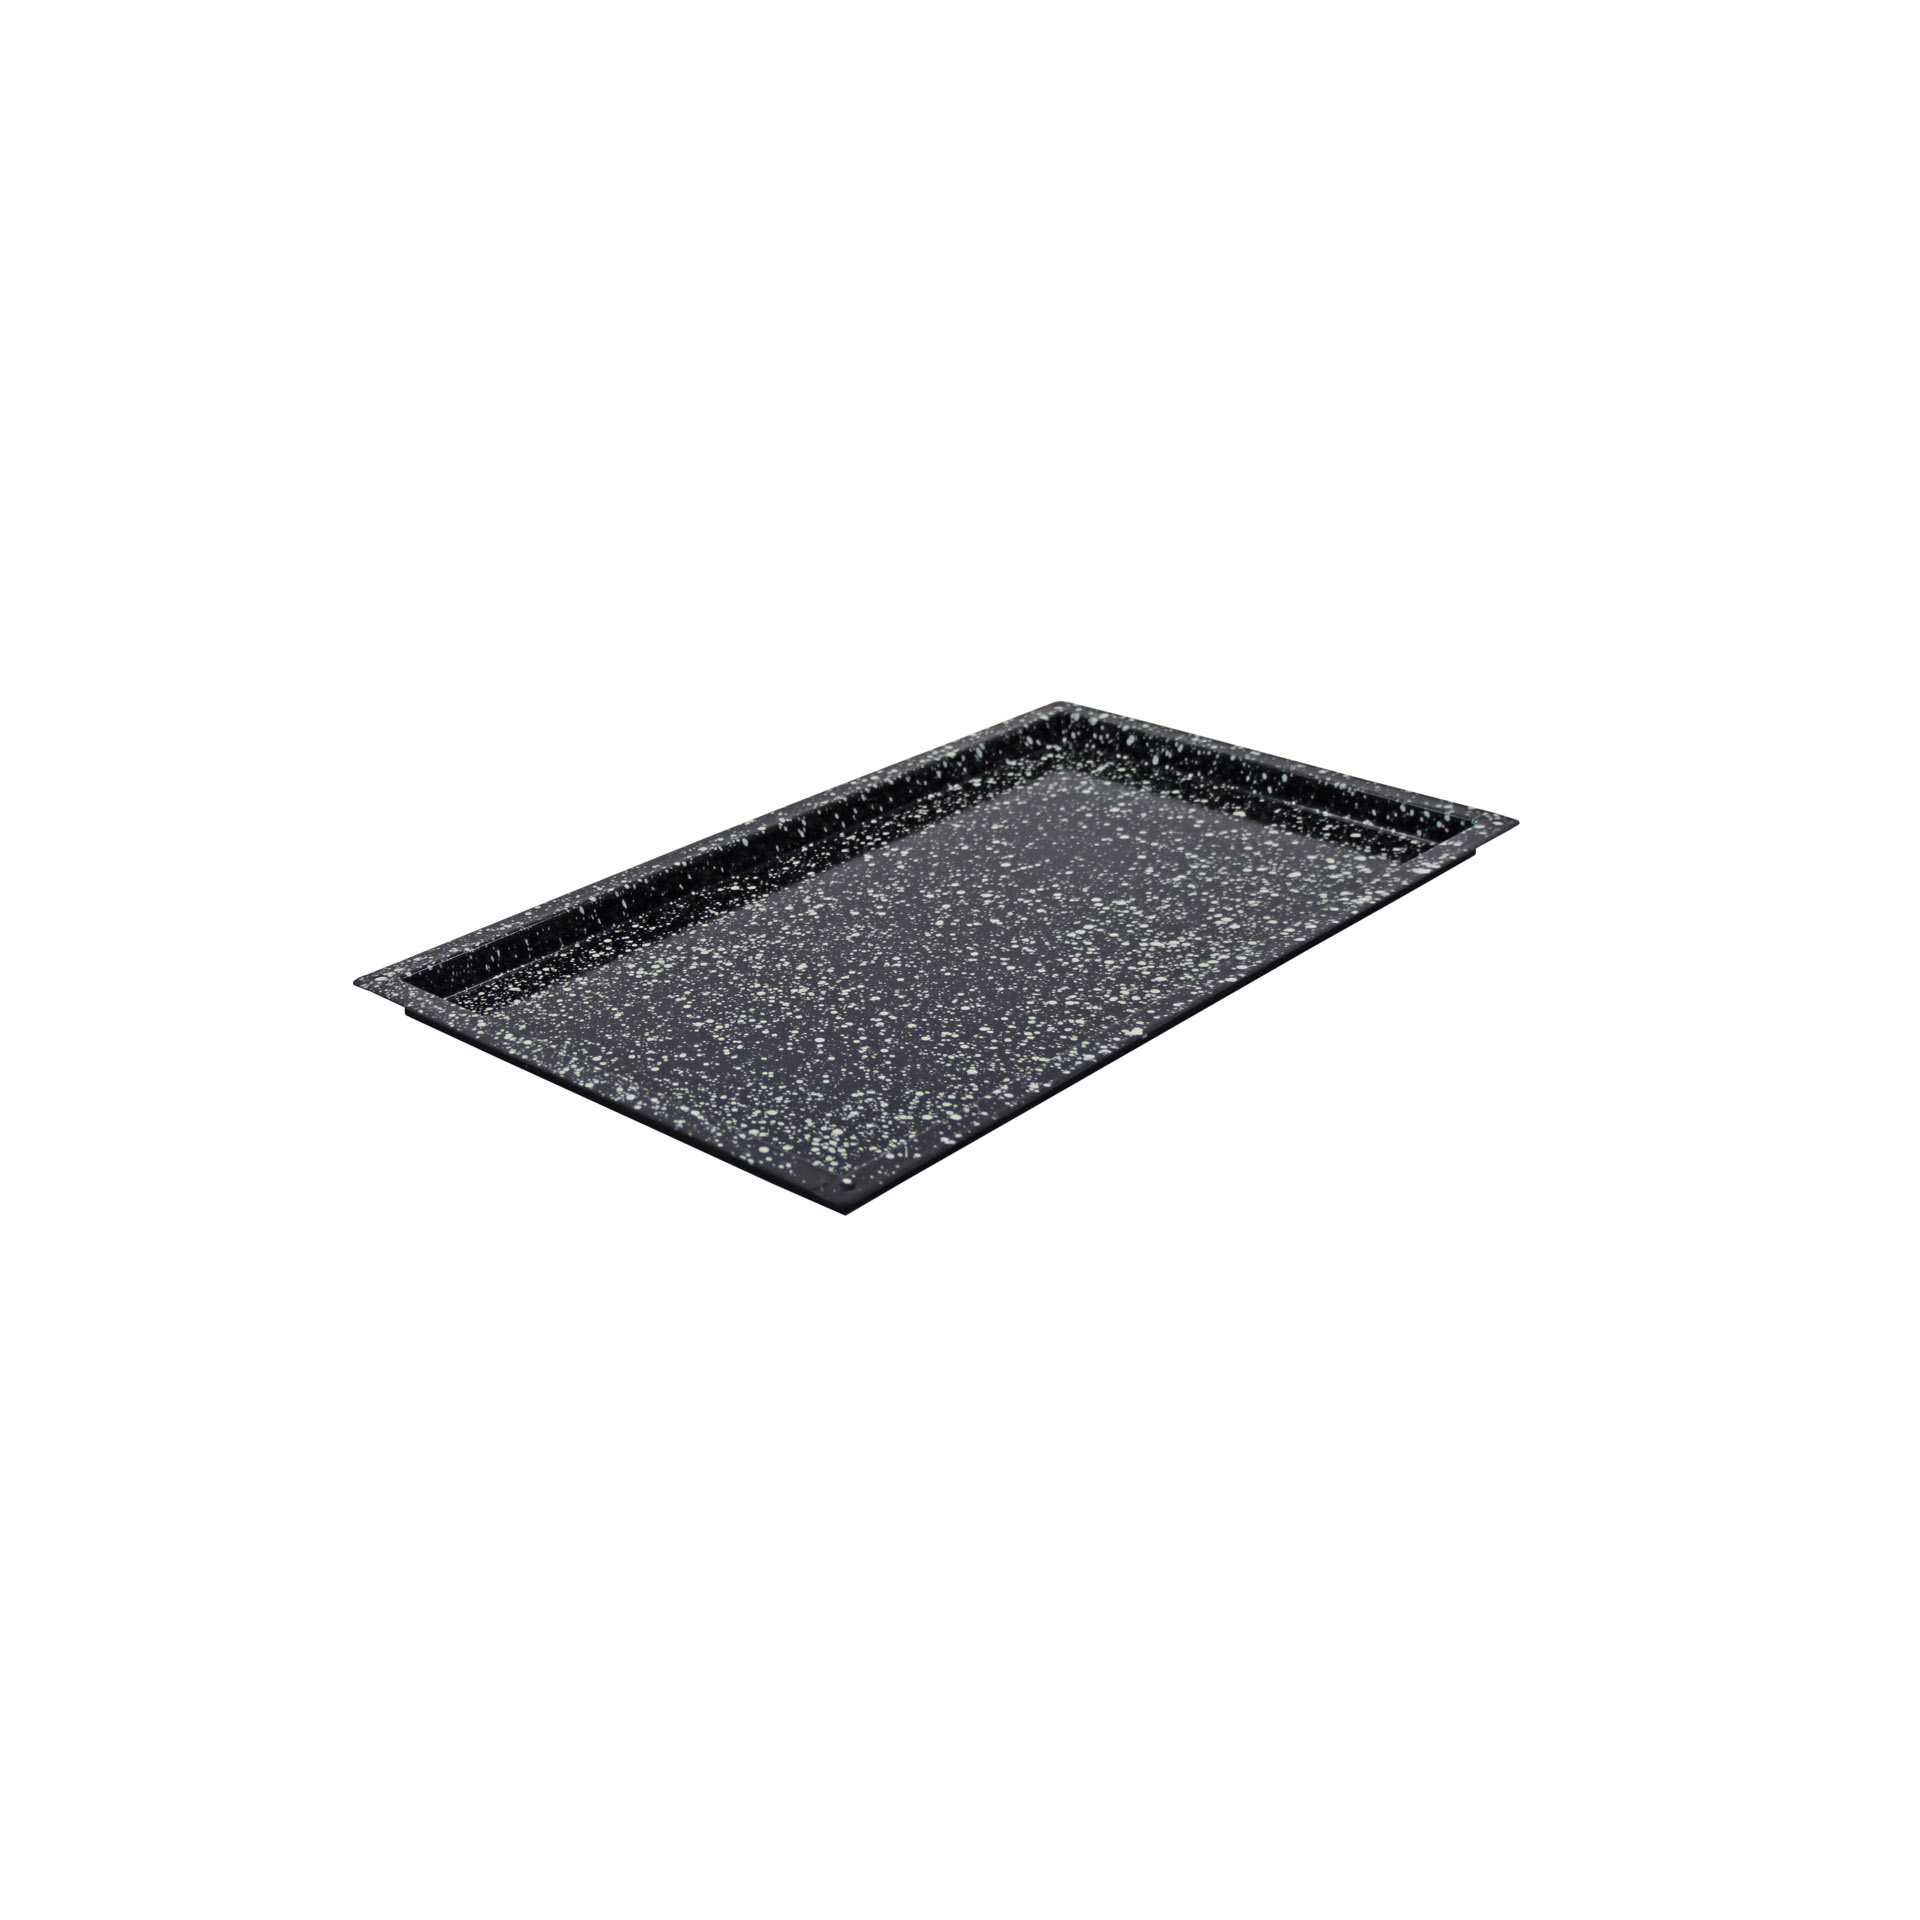 GN-Backblech - Granit-Emaille - Abm. 53,0 x 32,5 x 2,0 cm - GN 1/1 (530 x 325 mm) - 20 mm - Stahlblech - 382510-C